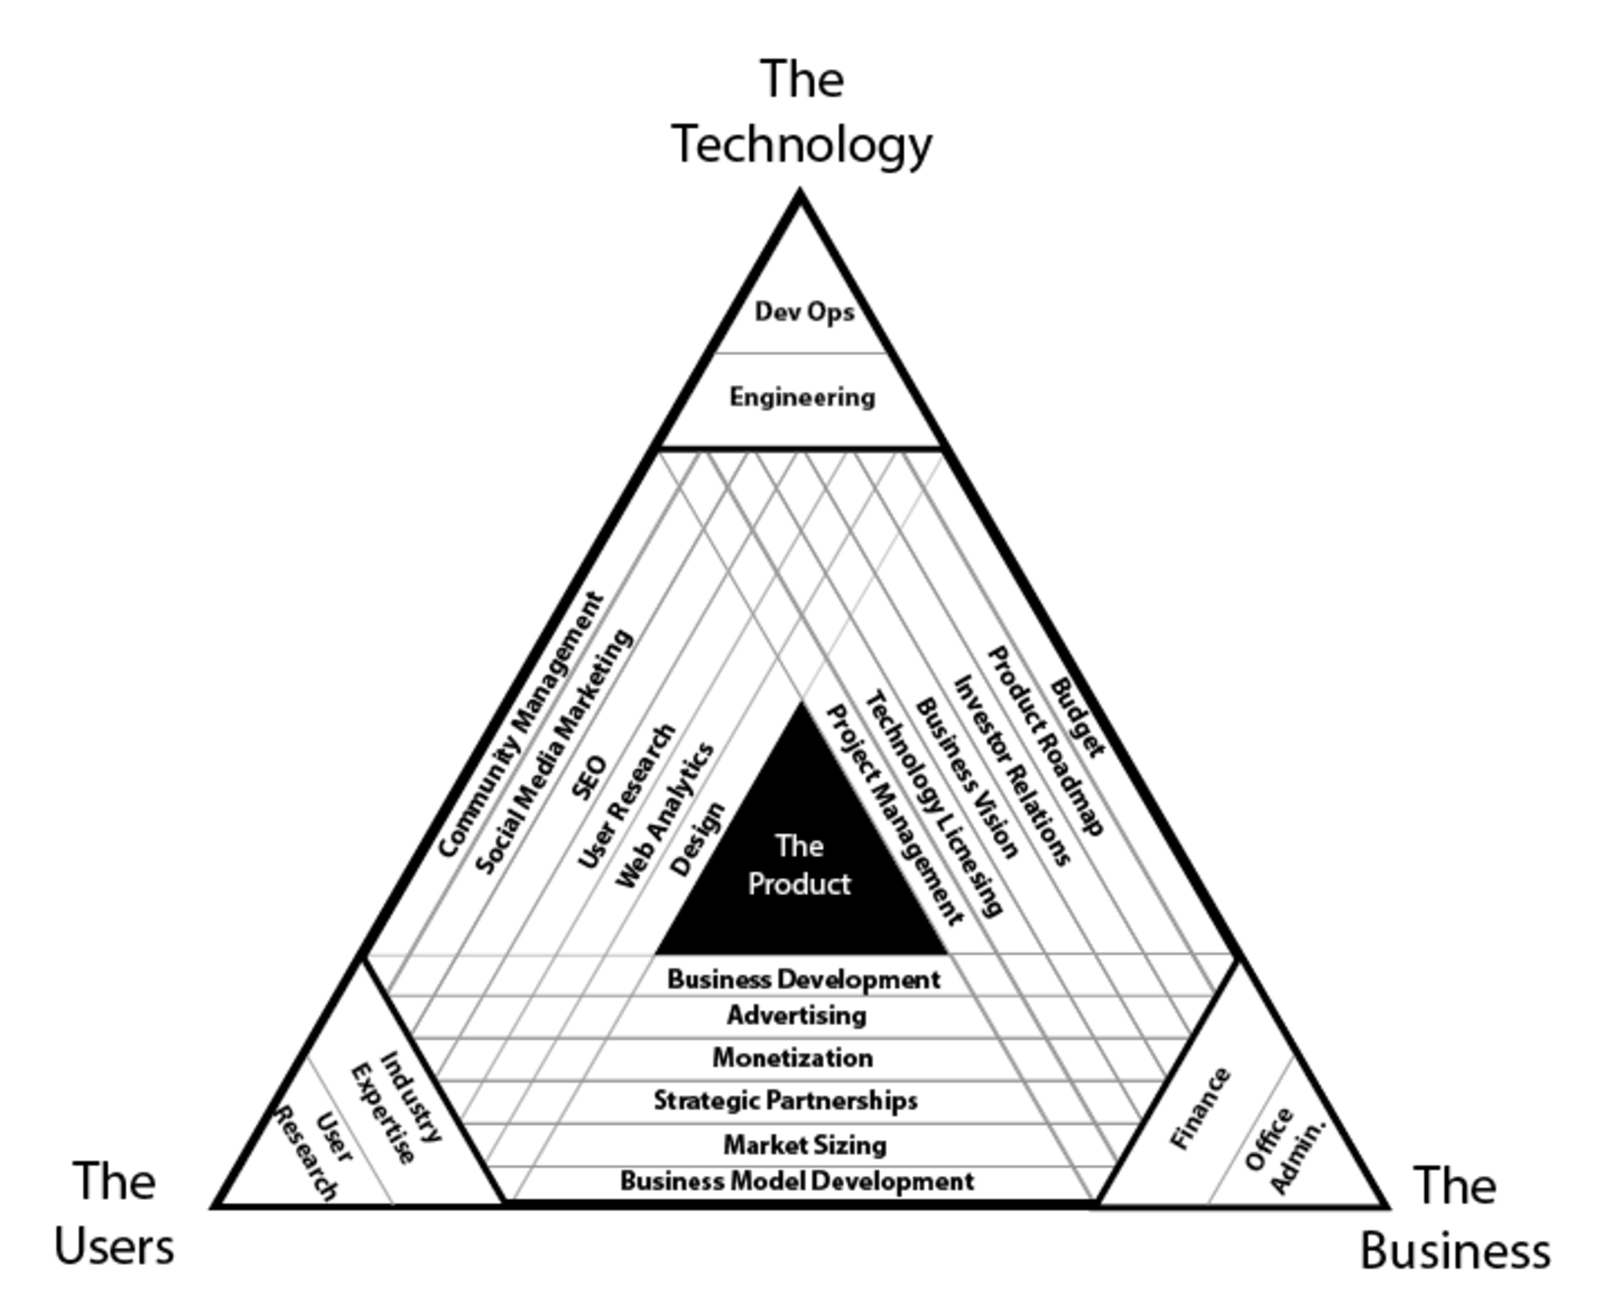 diagrama de los roles en una empresa tecnológica que